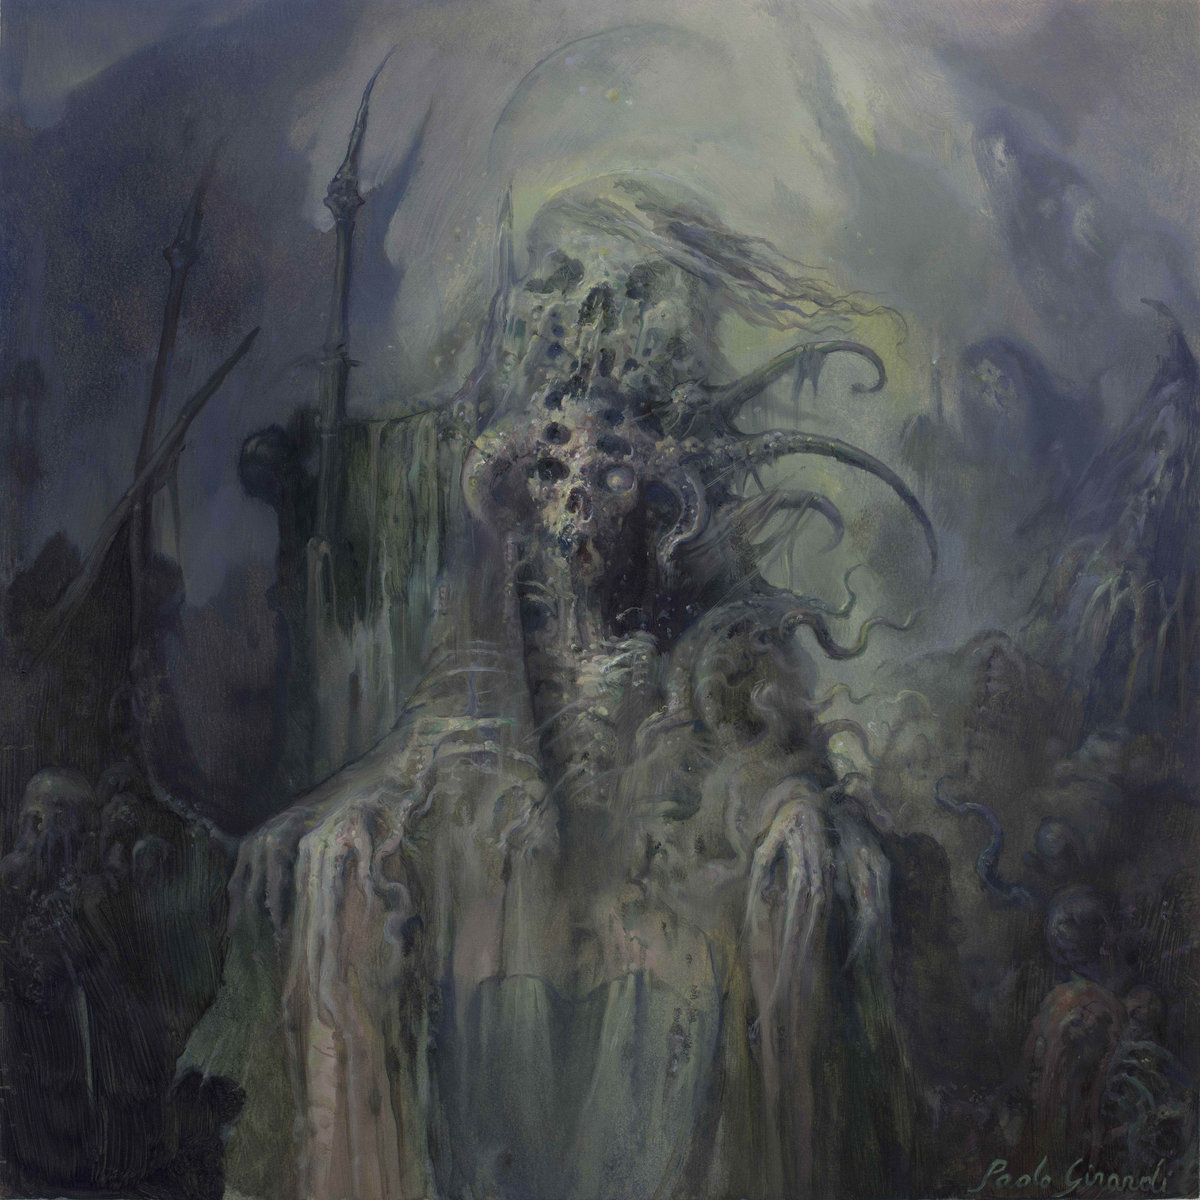 Dysphotic - The Eternal Throne LP